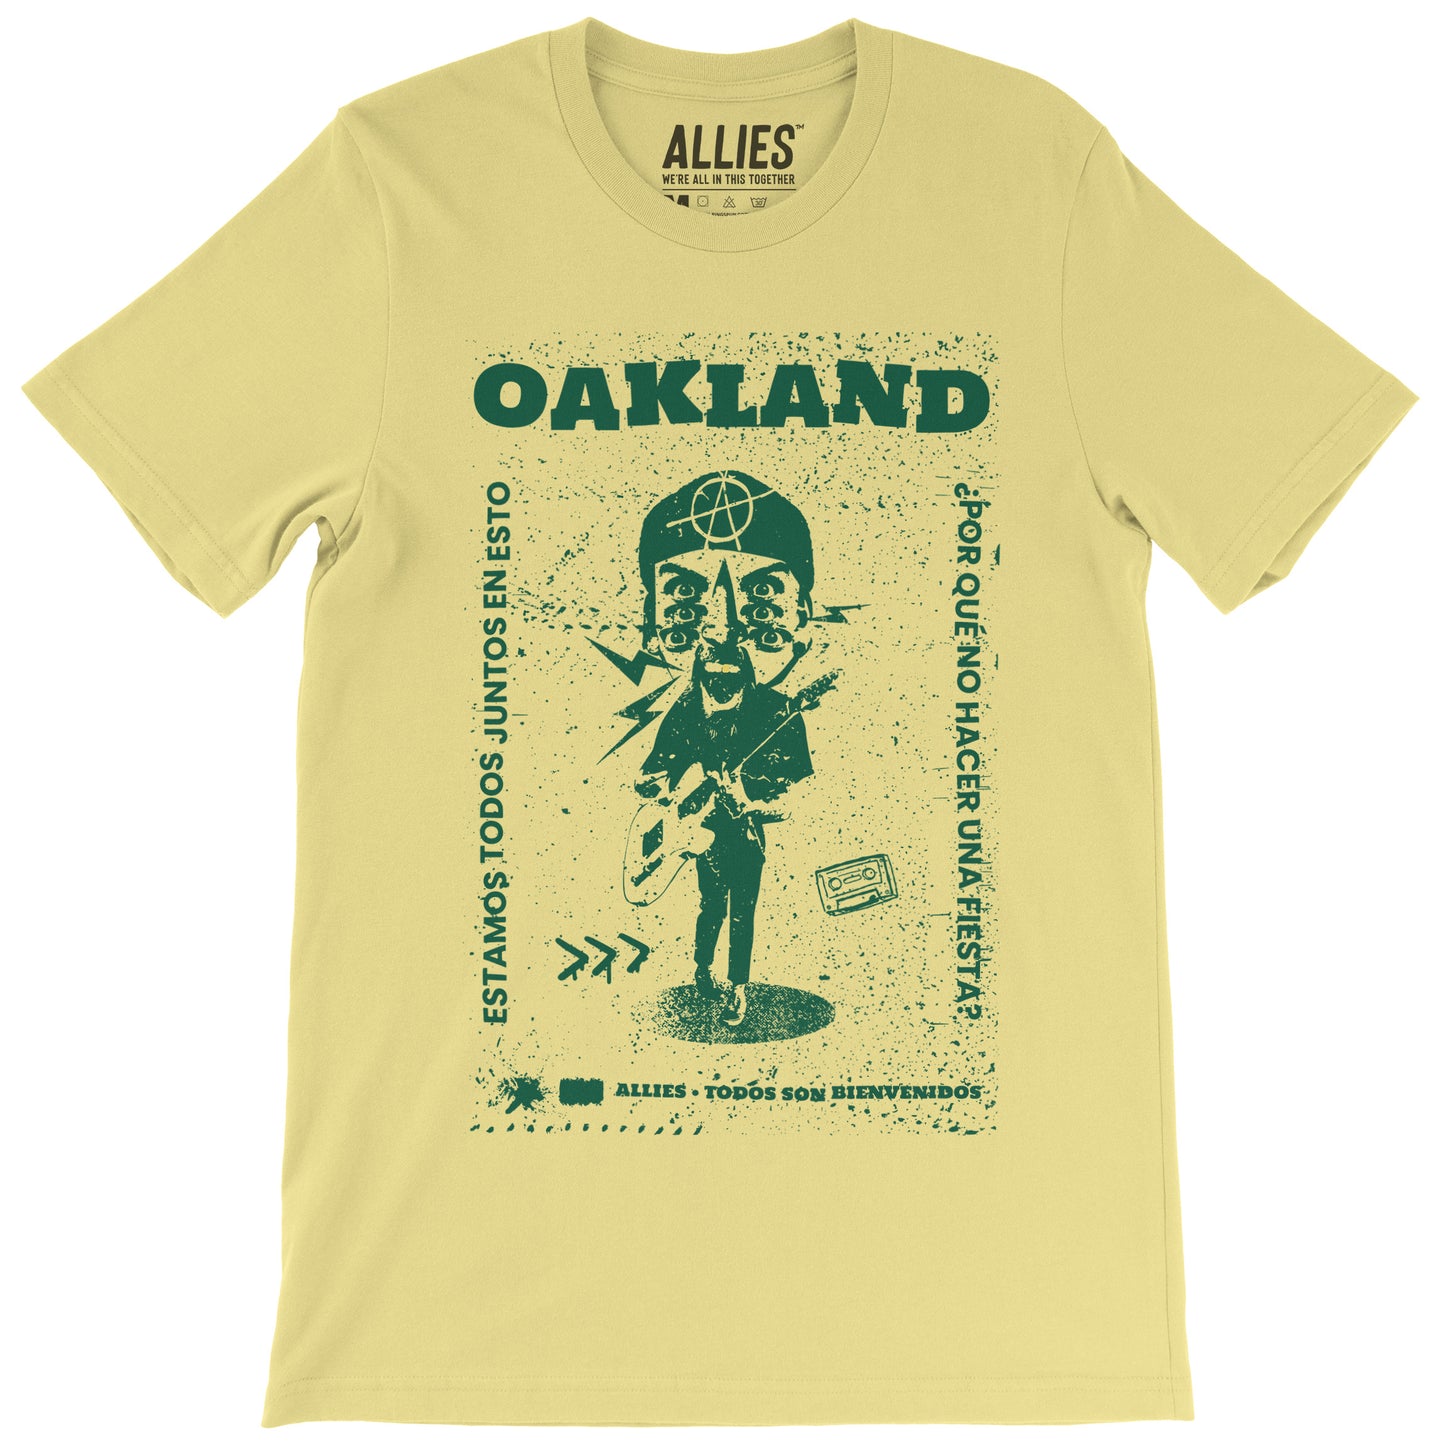 Oakland Punk T-shirt